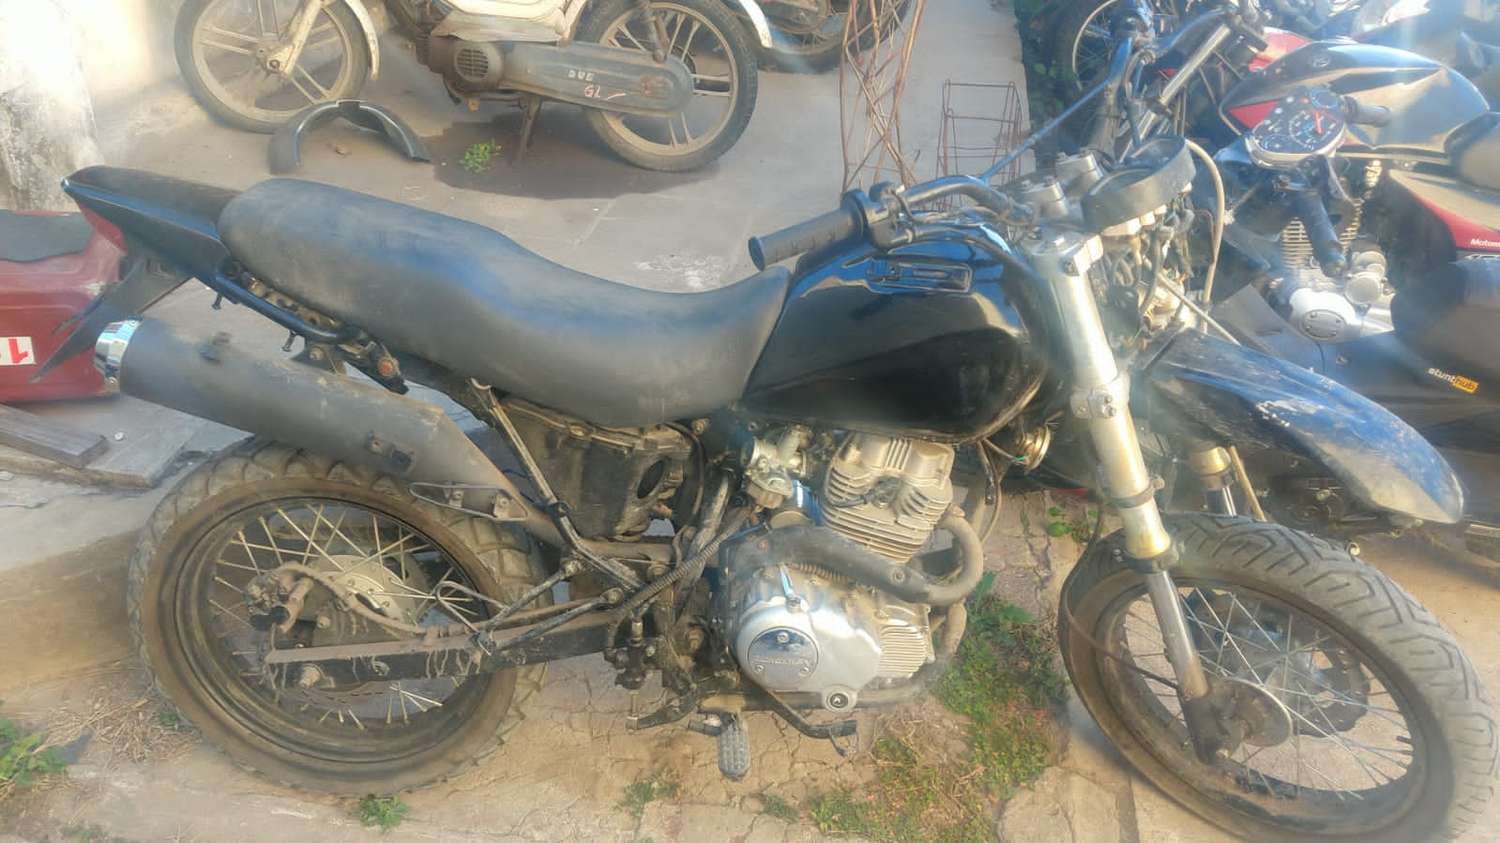 Detuvieron a dos jóvenes que querían darle arranque a una moto robada